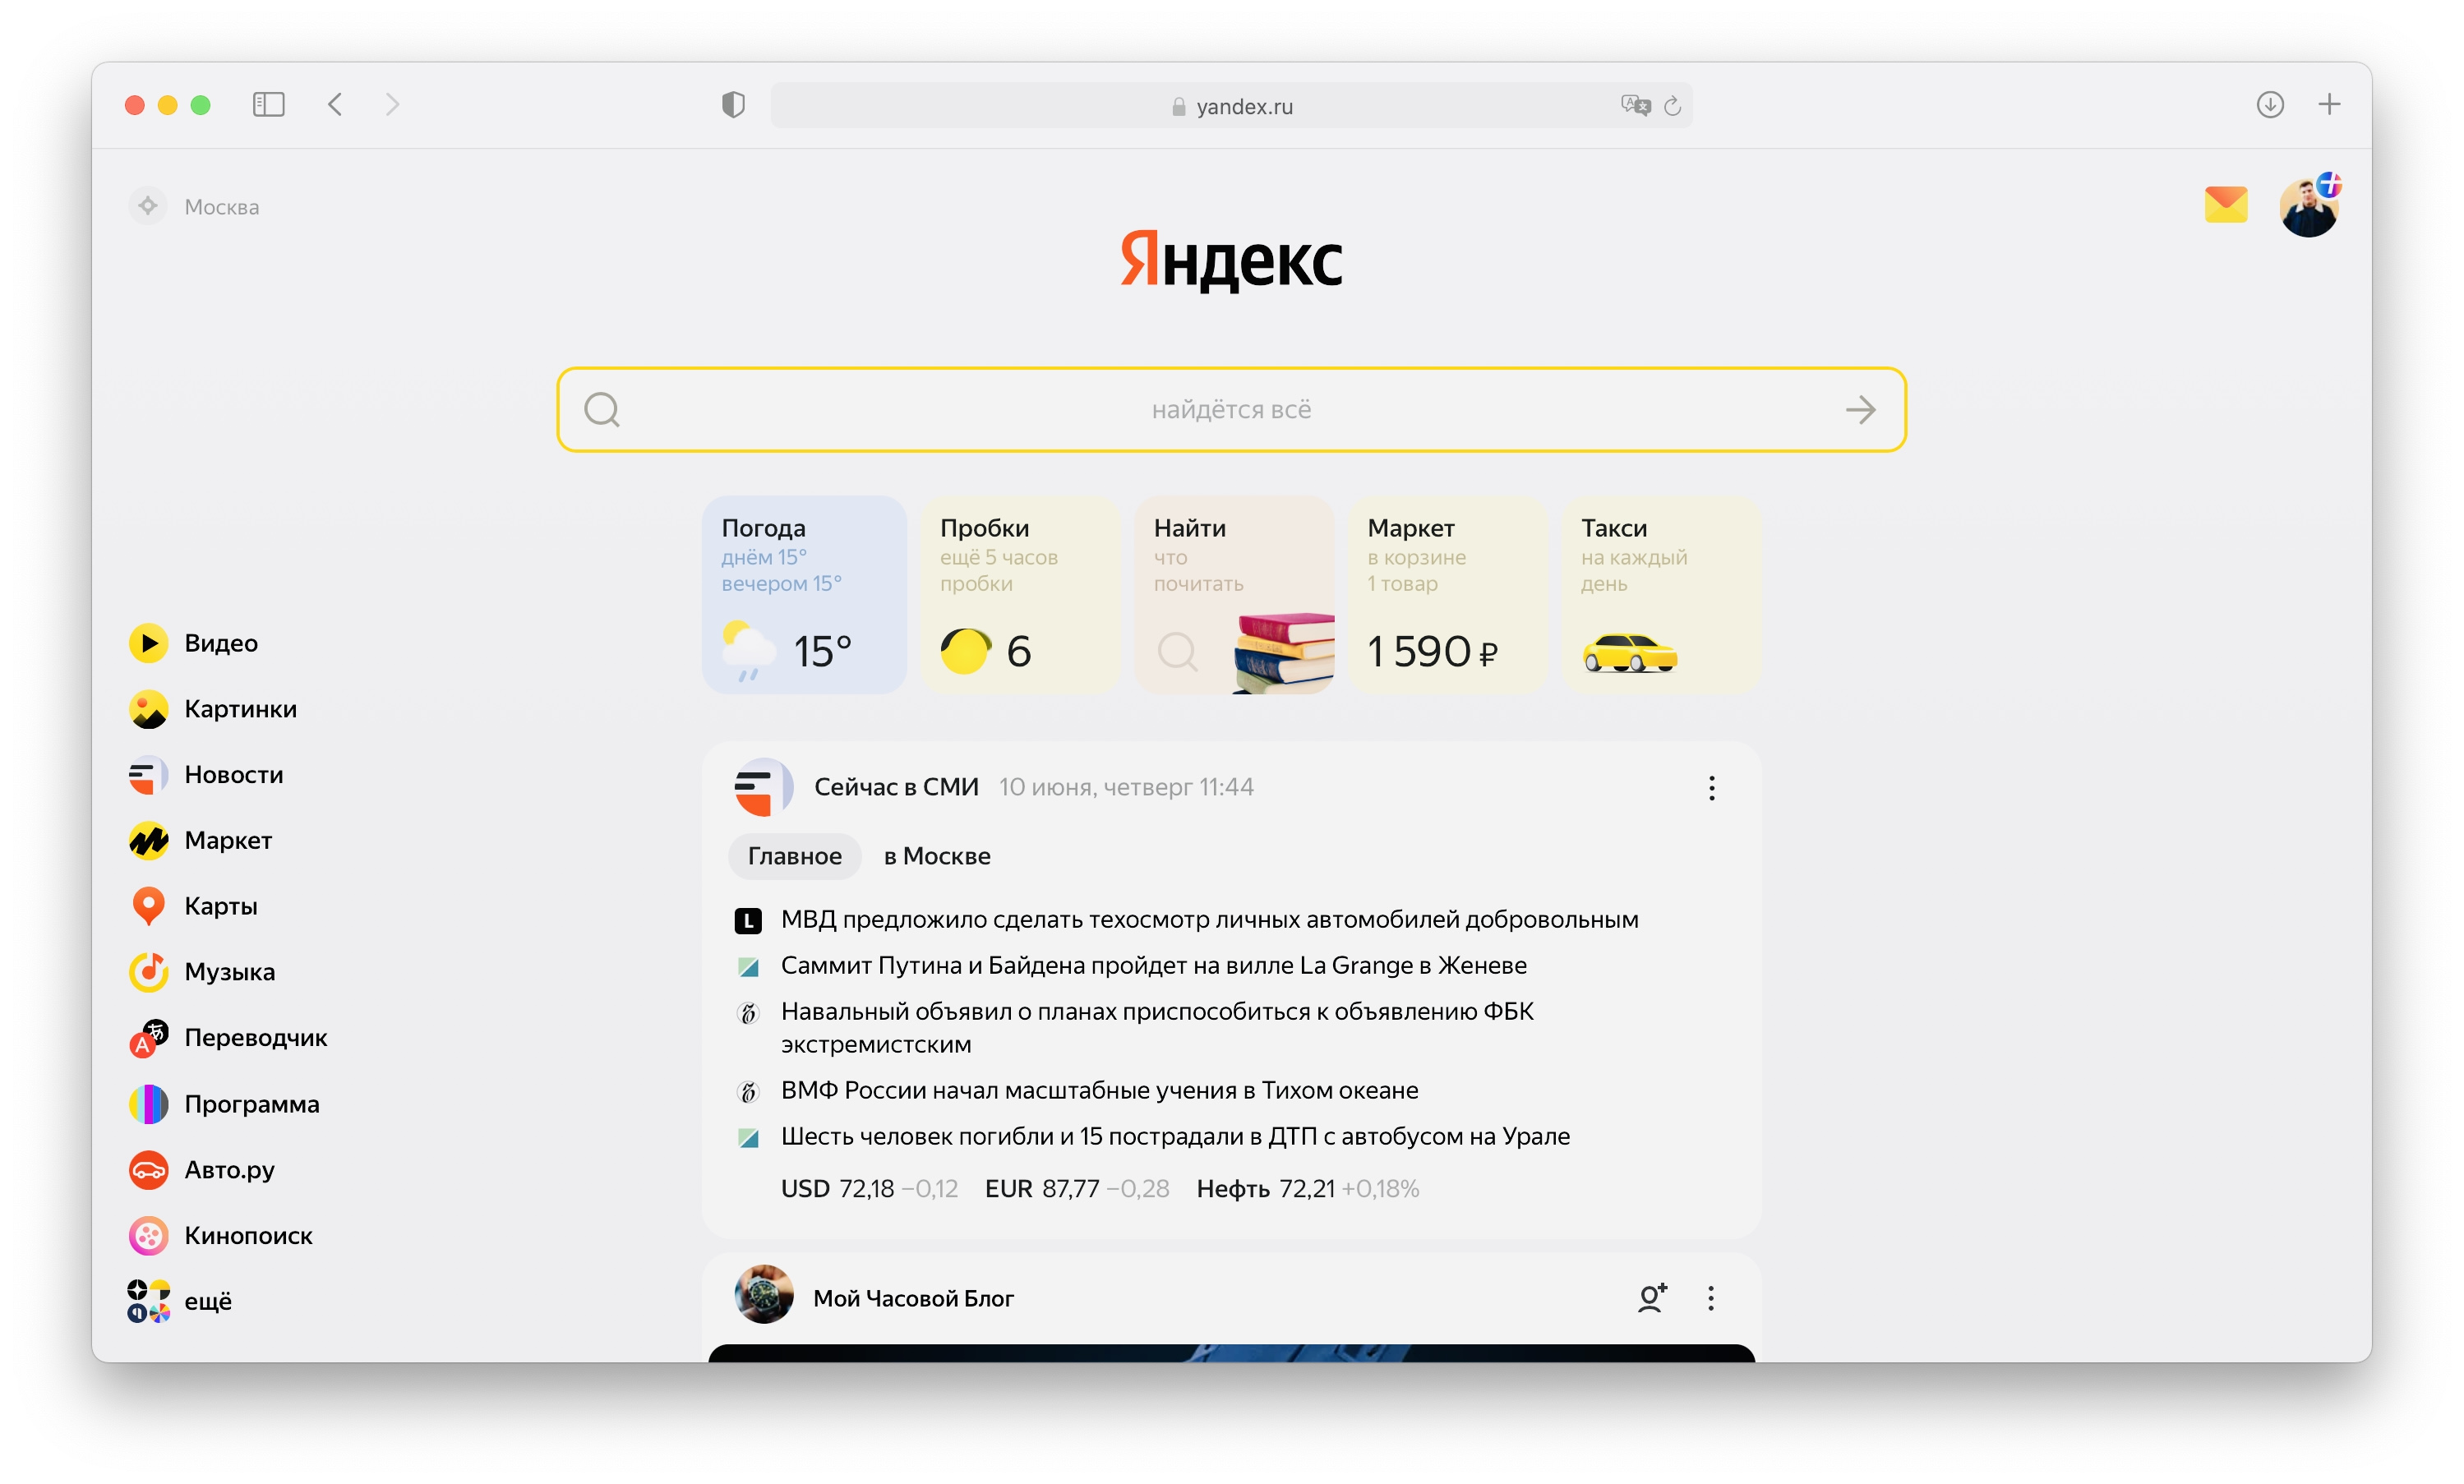 Яндекс представил новый Поиск. Он скрывает фейковые отзывы, ищет внутри видео и рекомендует, что посмотреть